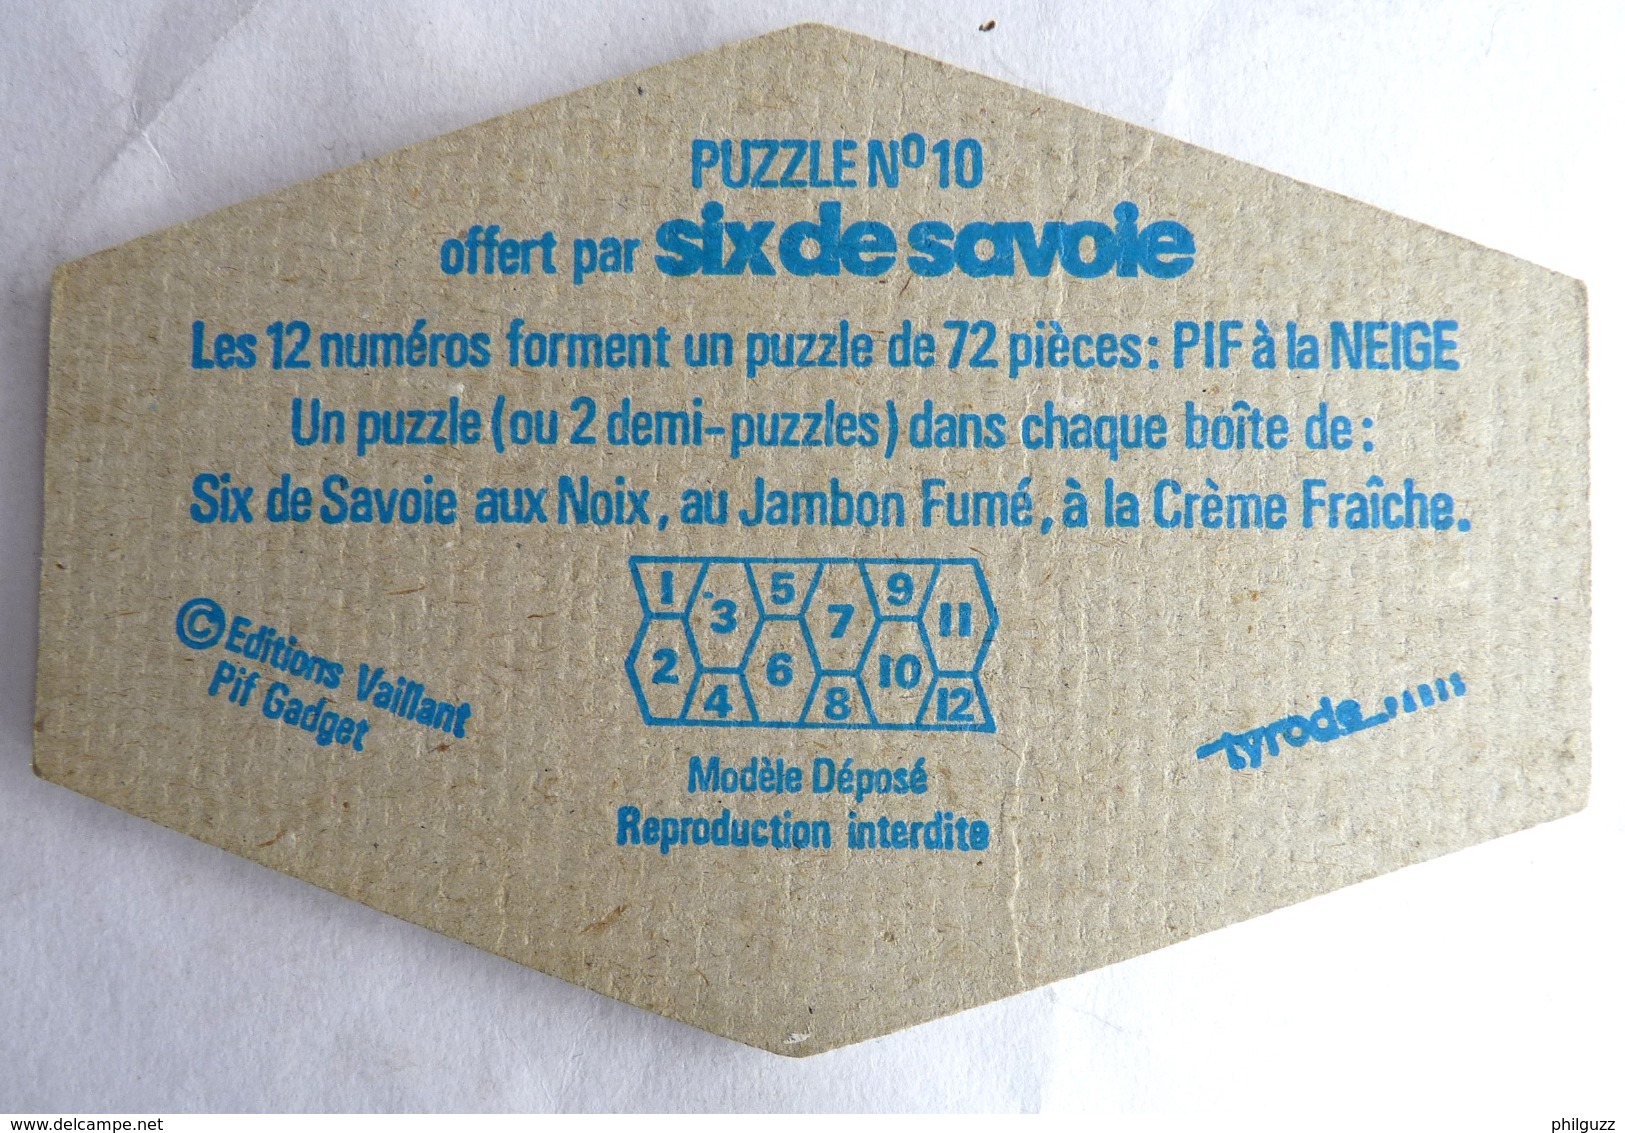 RARE PUZZLE SIX DE SAVOIE PIF N°10 1977 (1) - Puzzles